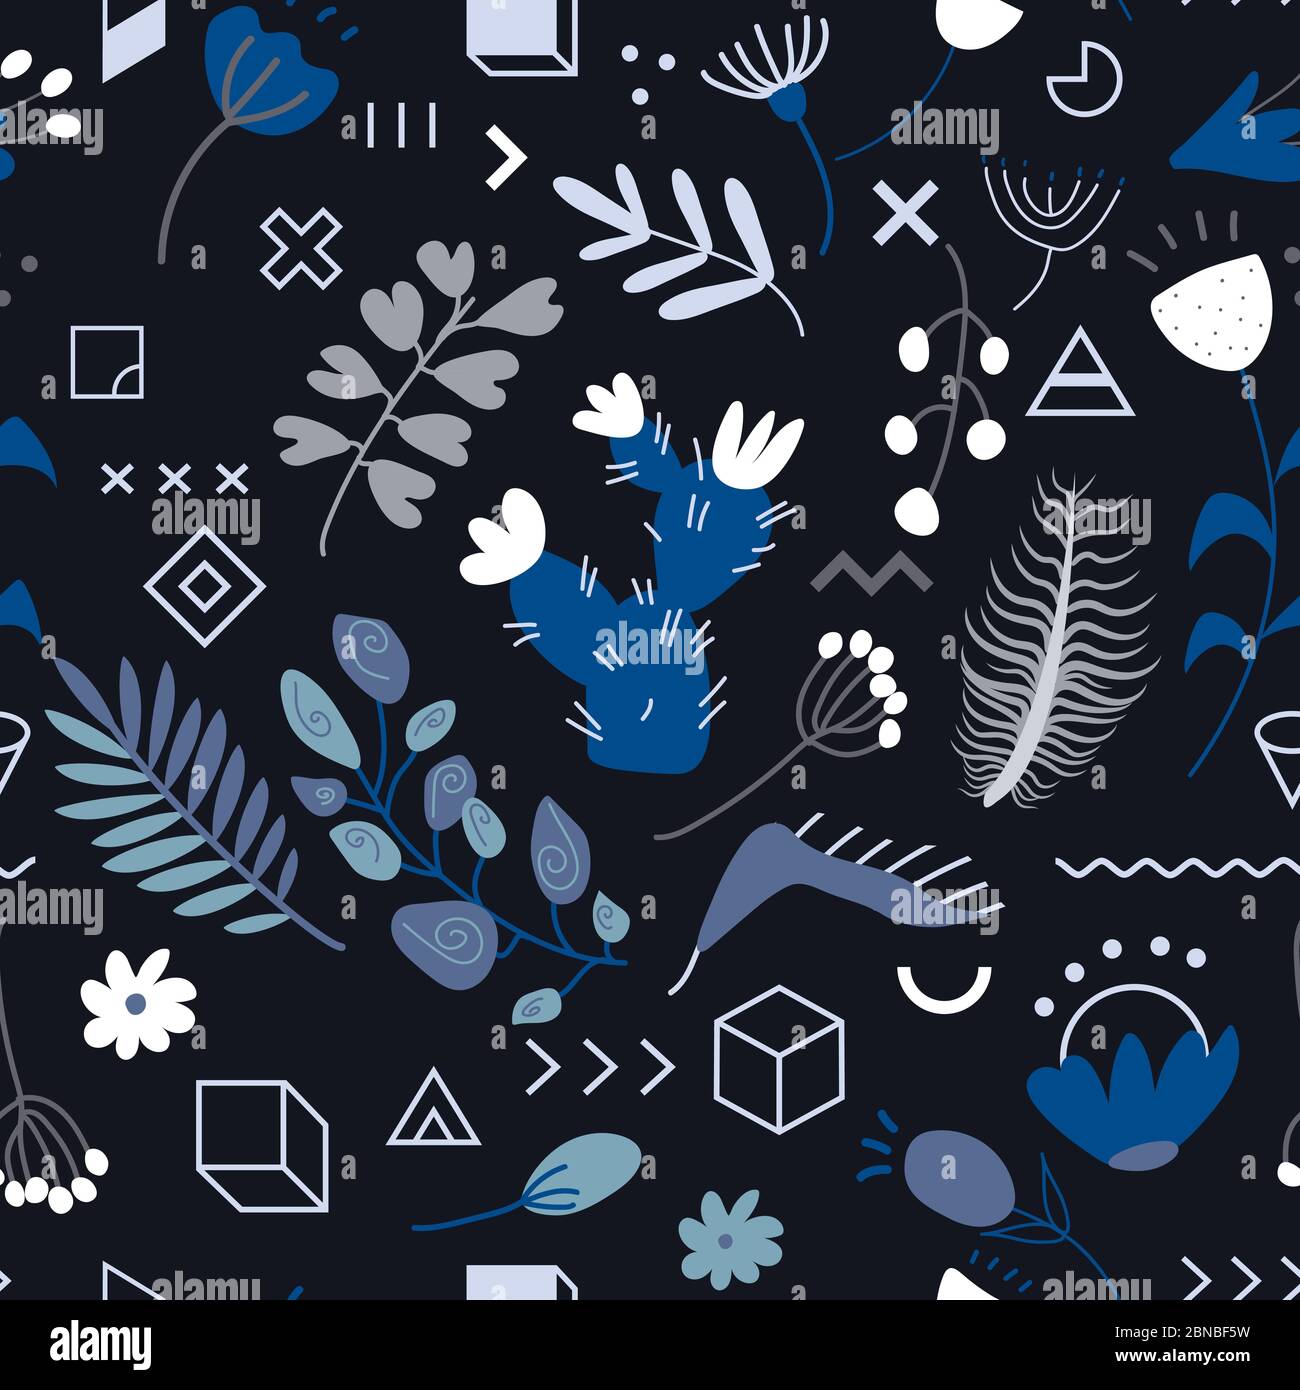 Nahtlose Muster-Set aus verschiedenen tropischen exotischen Blättern, Pflanzen und Blumen mit Doodle geometrischen Figuren auf schwarzem Hintergrund. Sammlung von Komple Stock Vektor